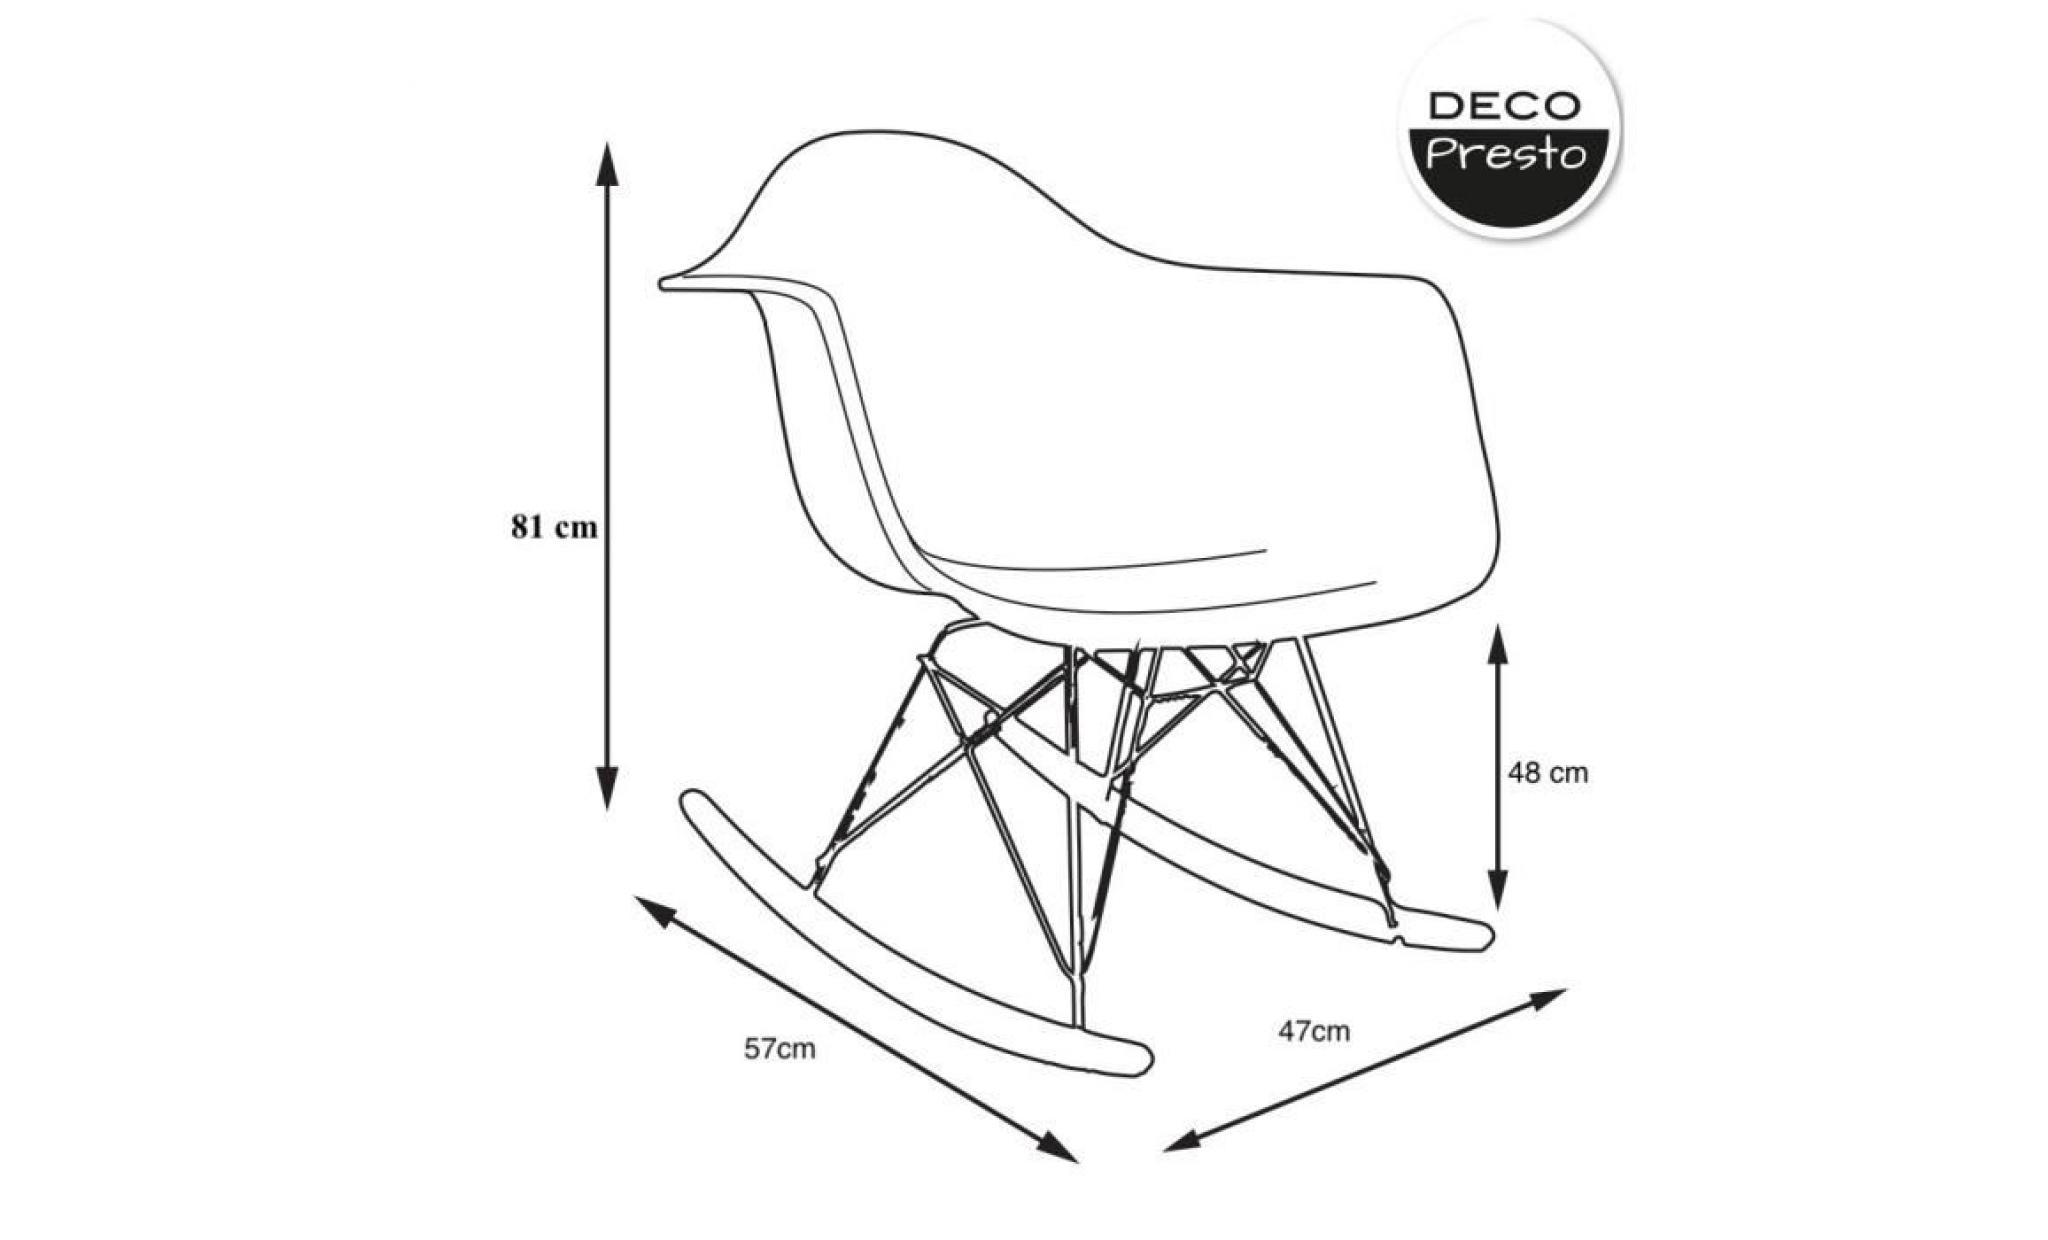 1 x fauteuil à bascule rocking chair eiffel haut. 48 cm gris perle pieds: bois noir decopresto dp rarb48 lg 1 pas cher